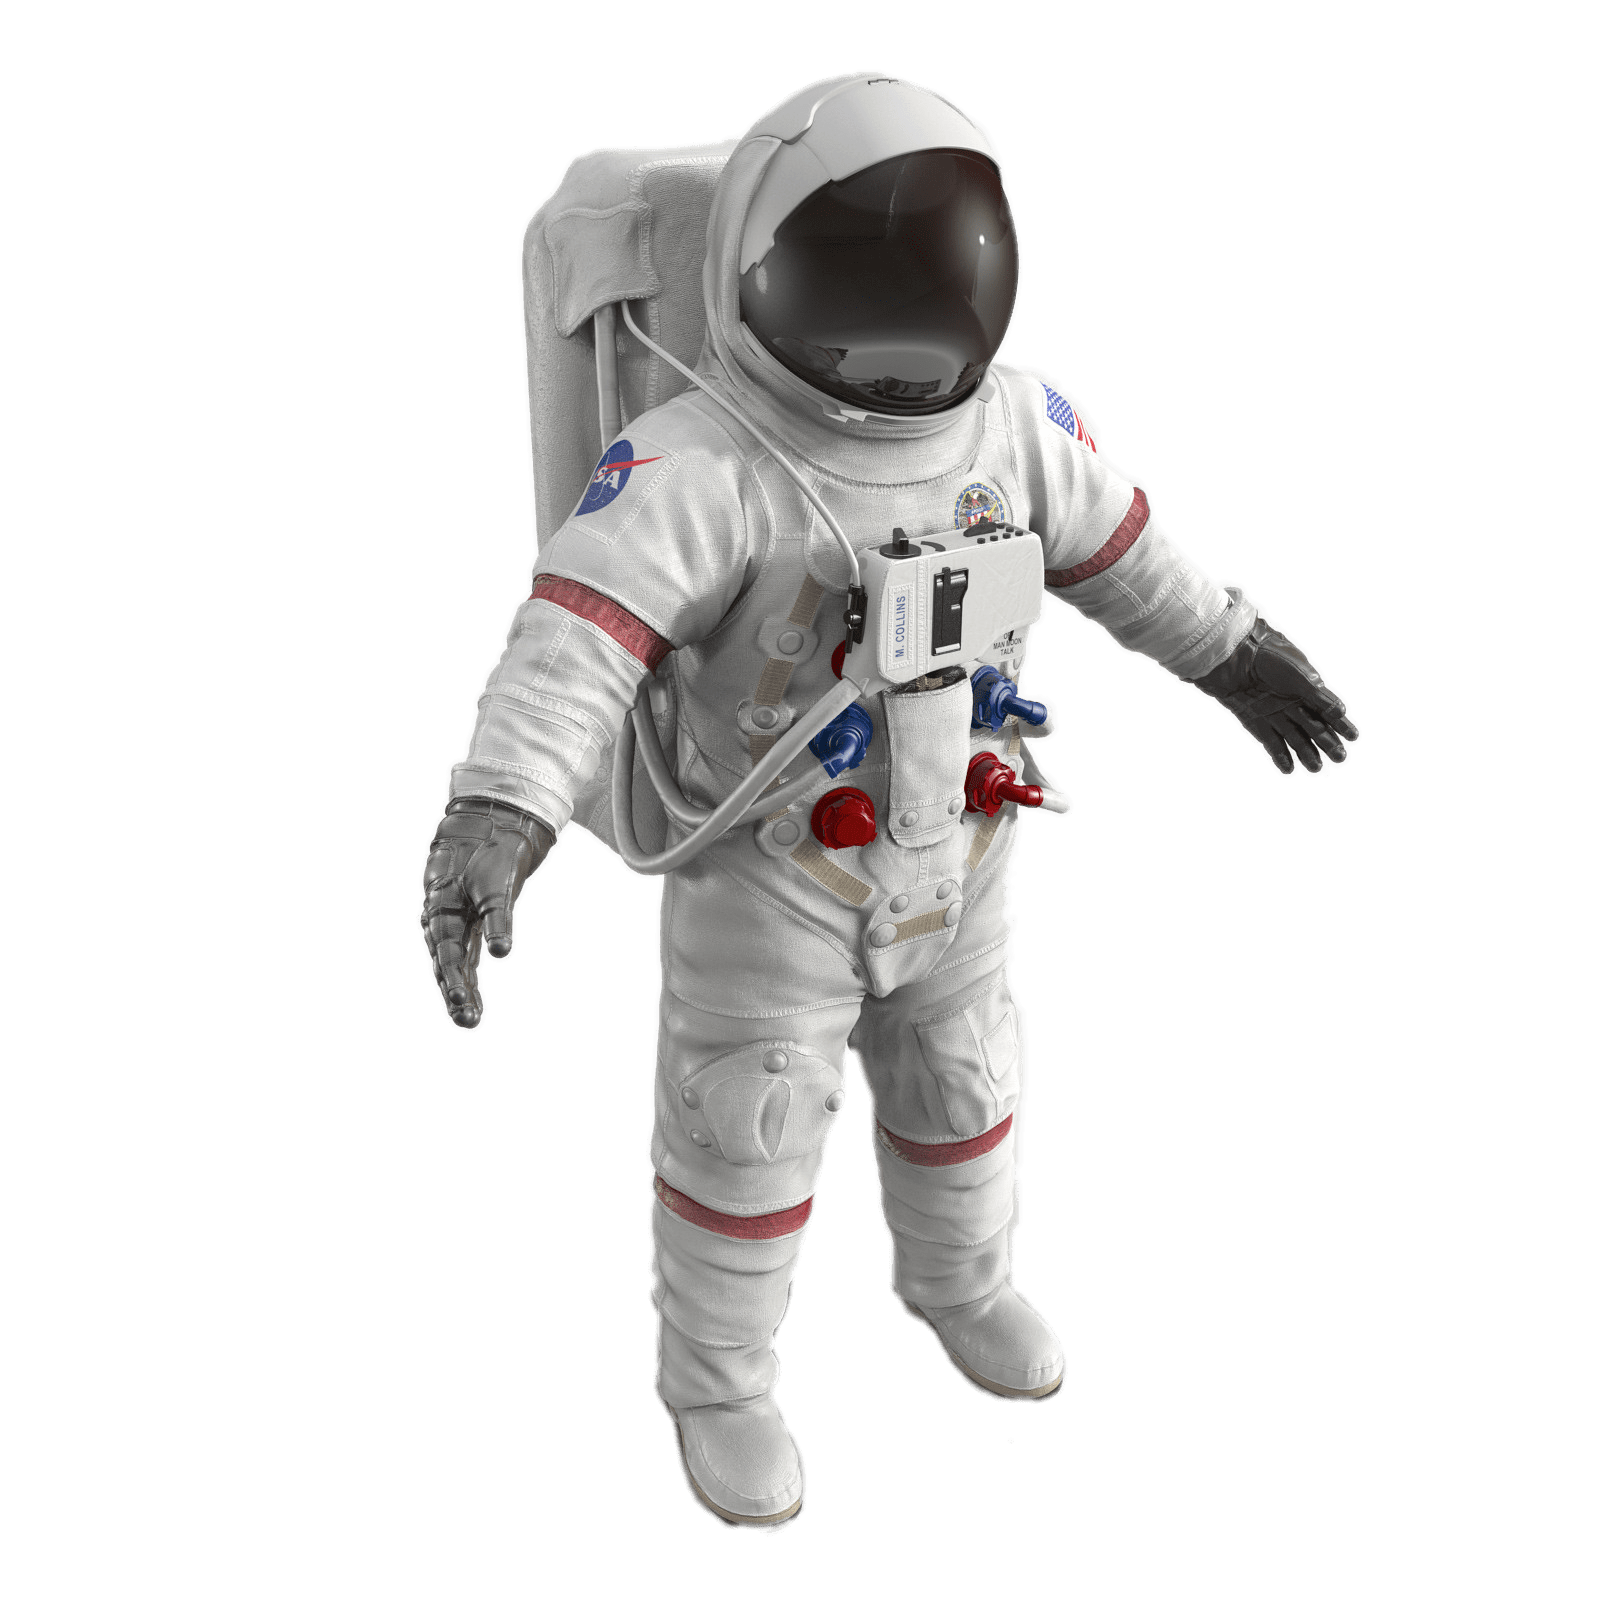 Astronautanzug PNG Herunterladen Bild Herunterladen